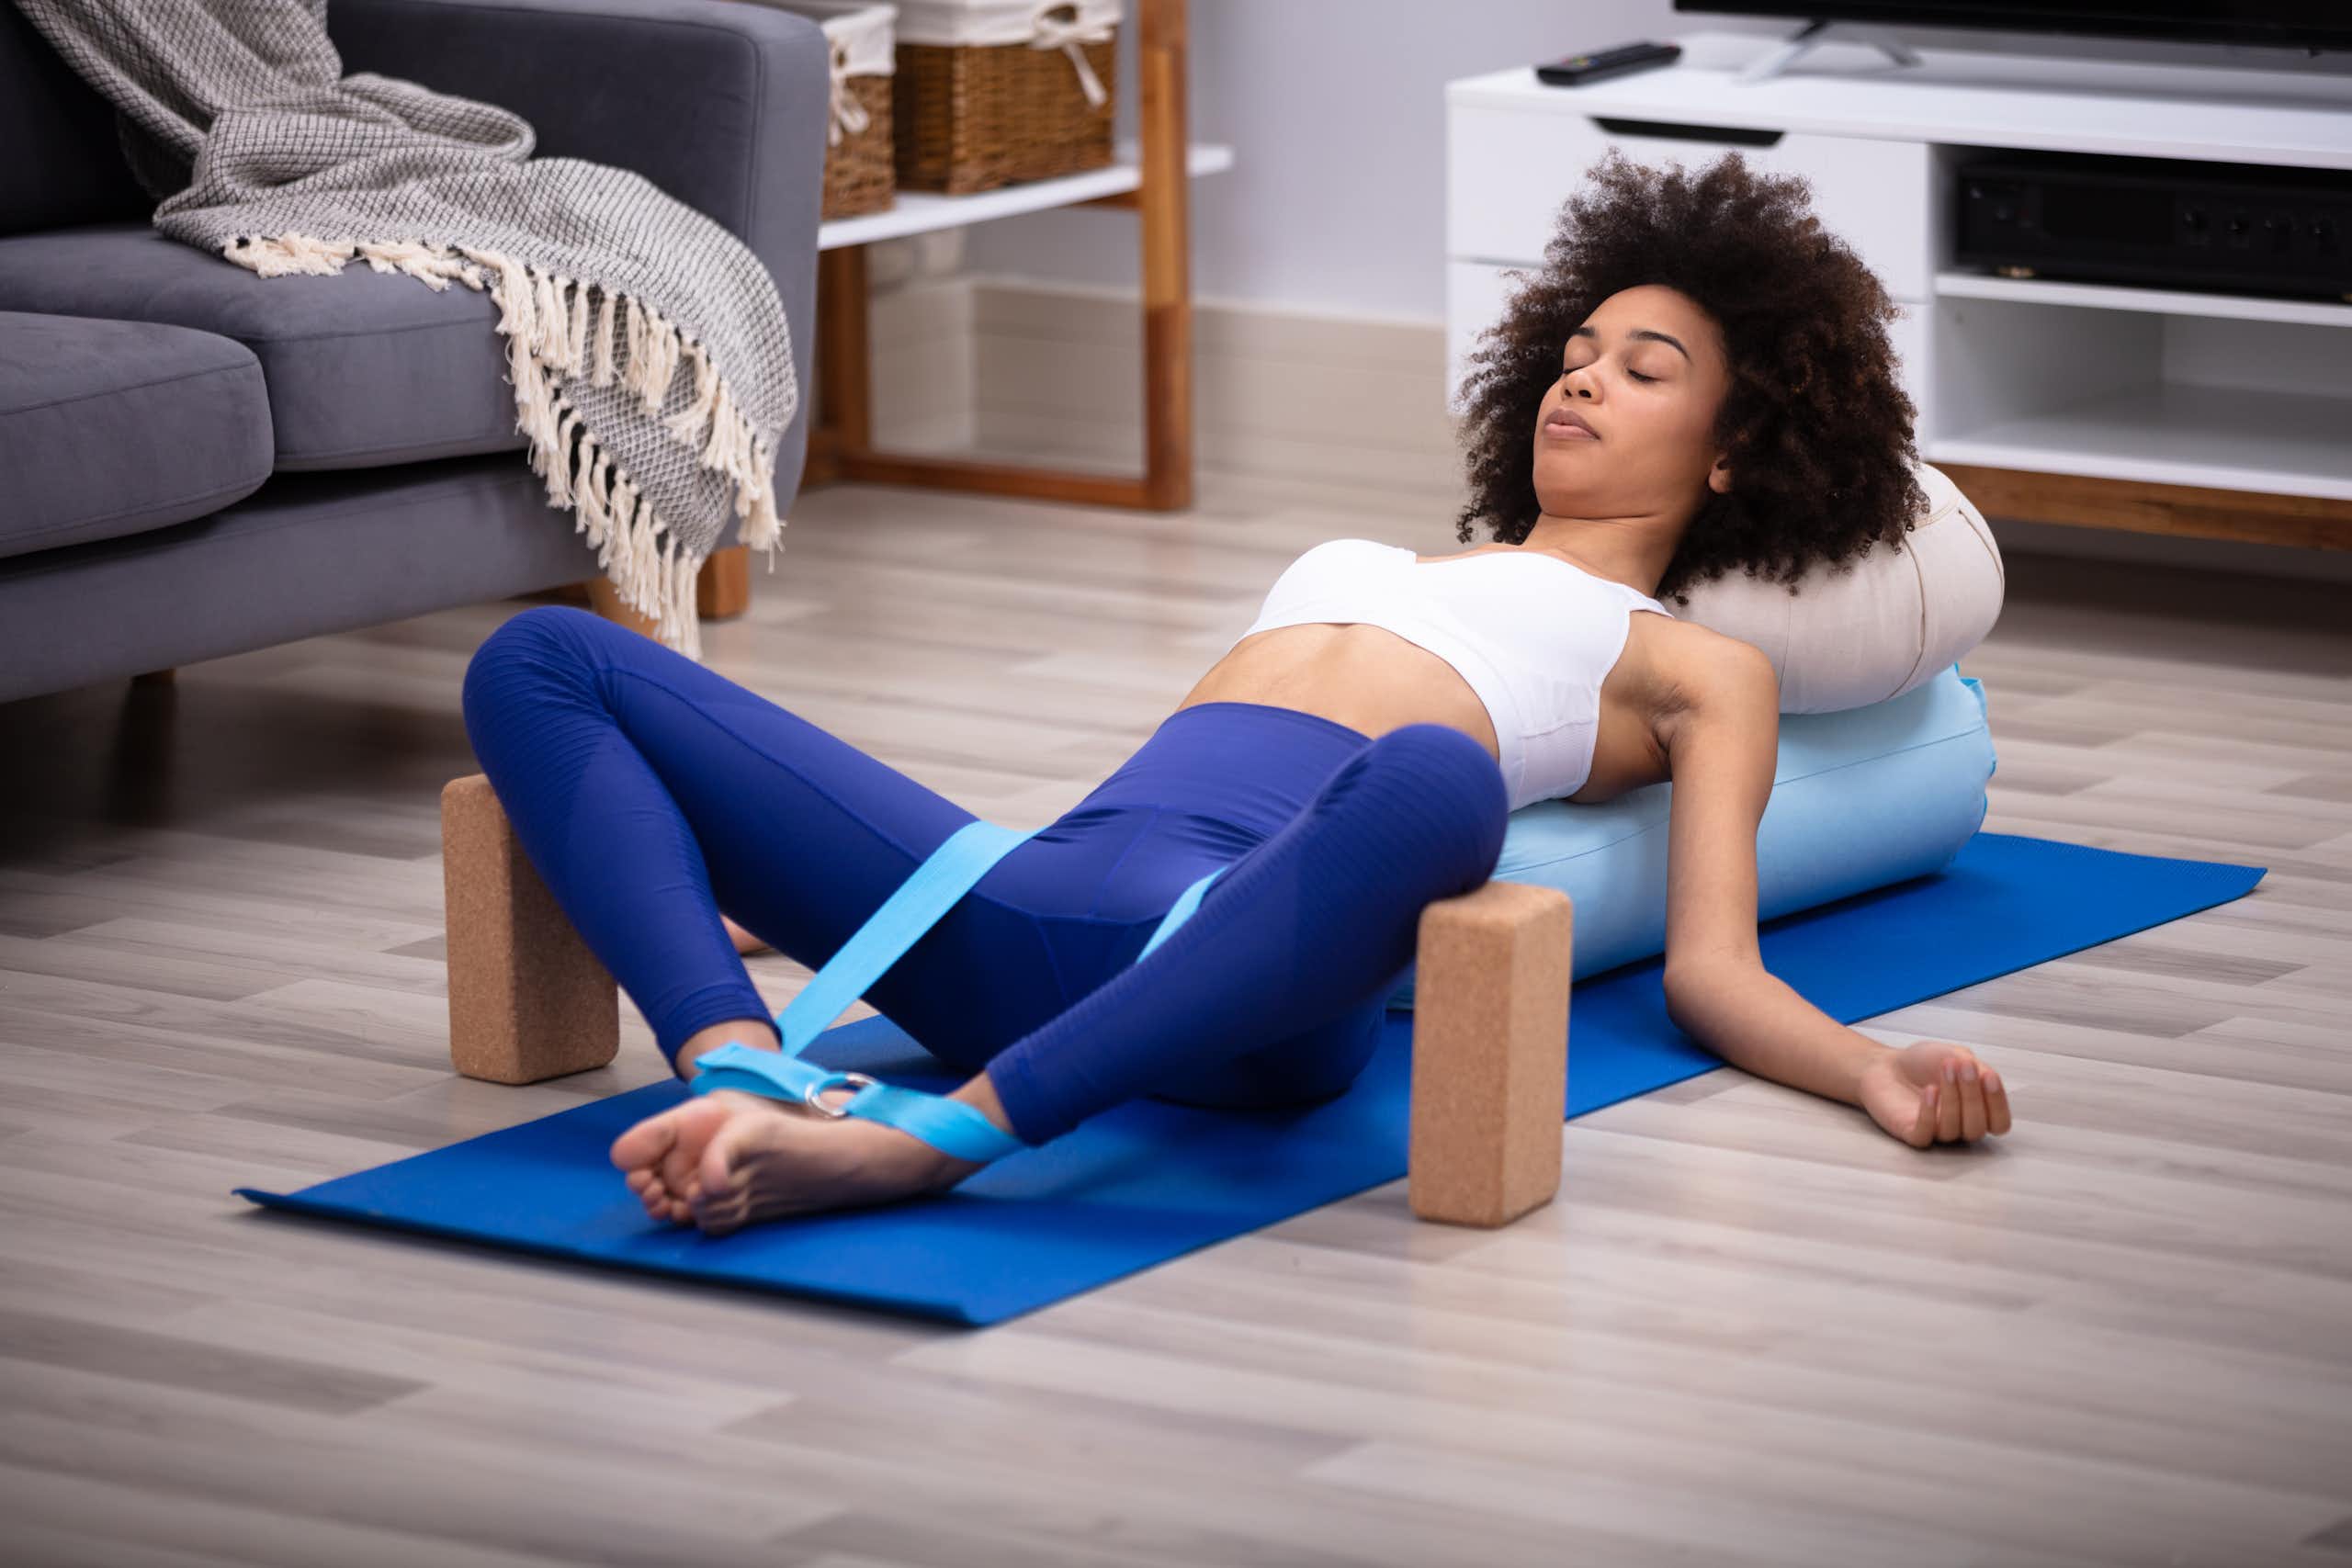 Une jeune femme est allongée sur le dos sur un tapis de gymnastique, les yeux fermés, les jambes en position de yoga (jambes écartées mais pieds joints, le haut du corps reposant sur des coussins.